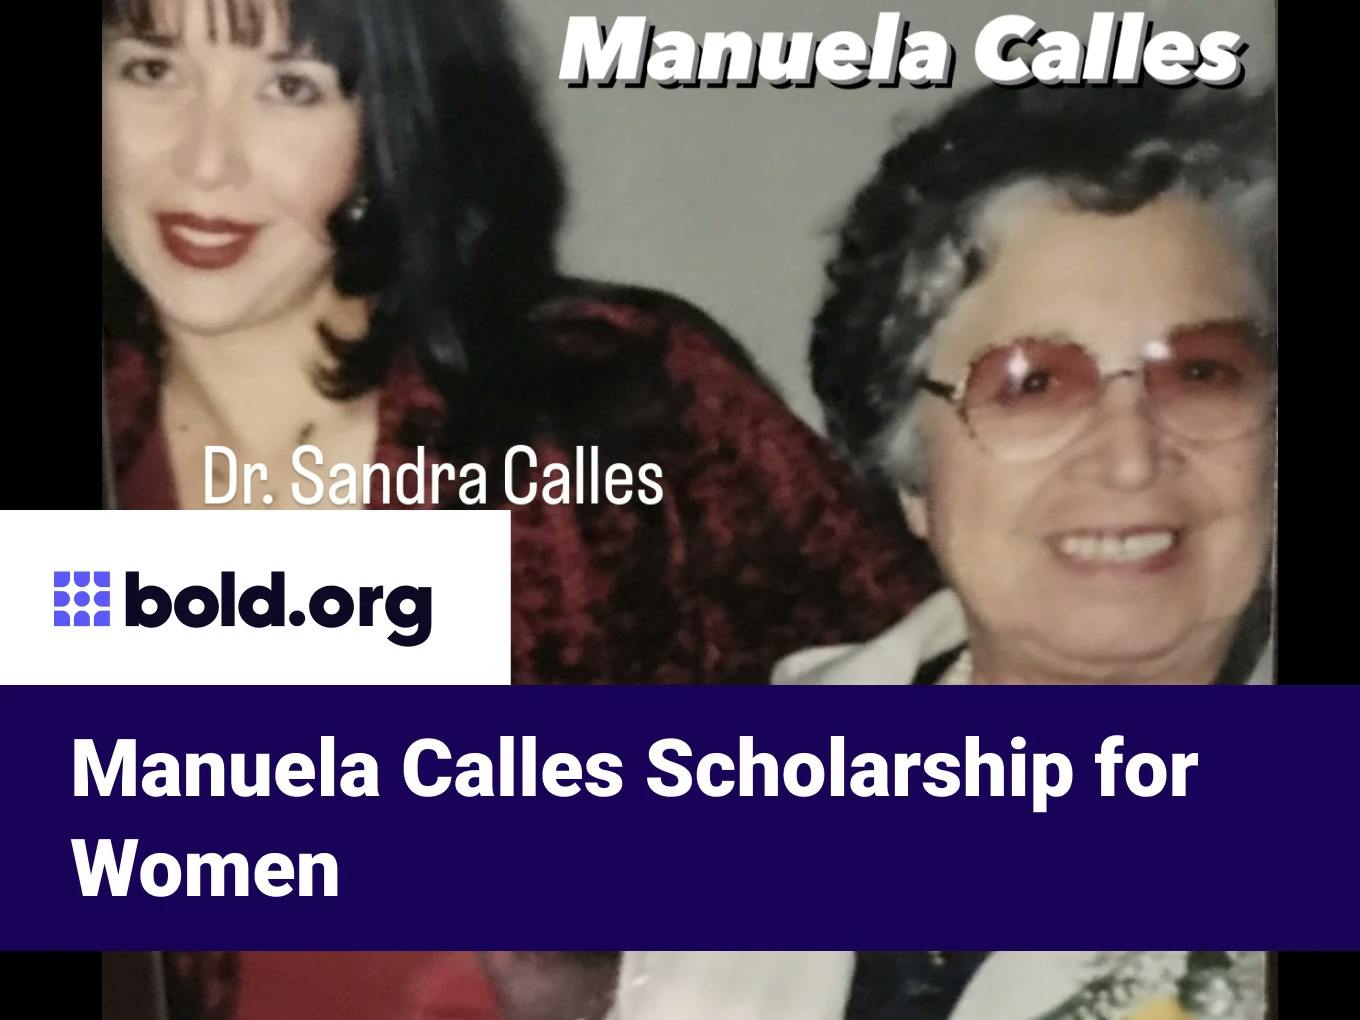 Manuela Calles Scholarship for Women